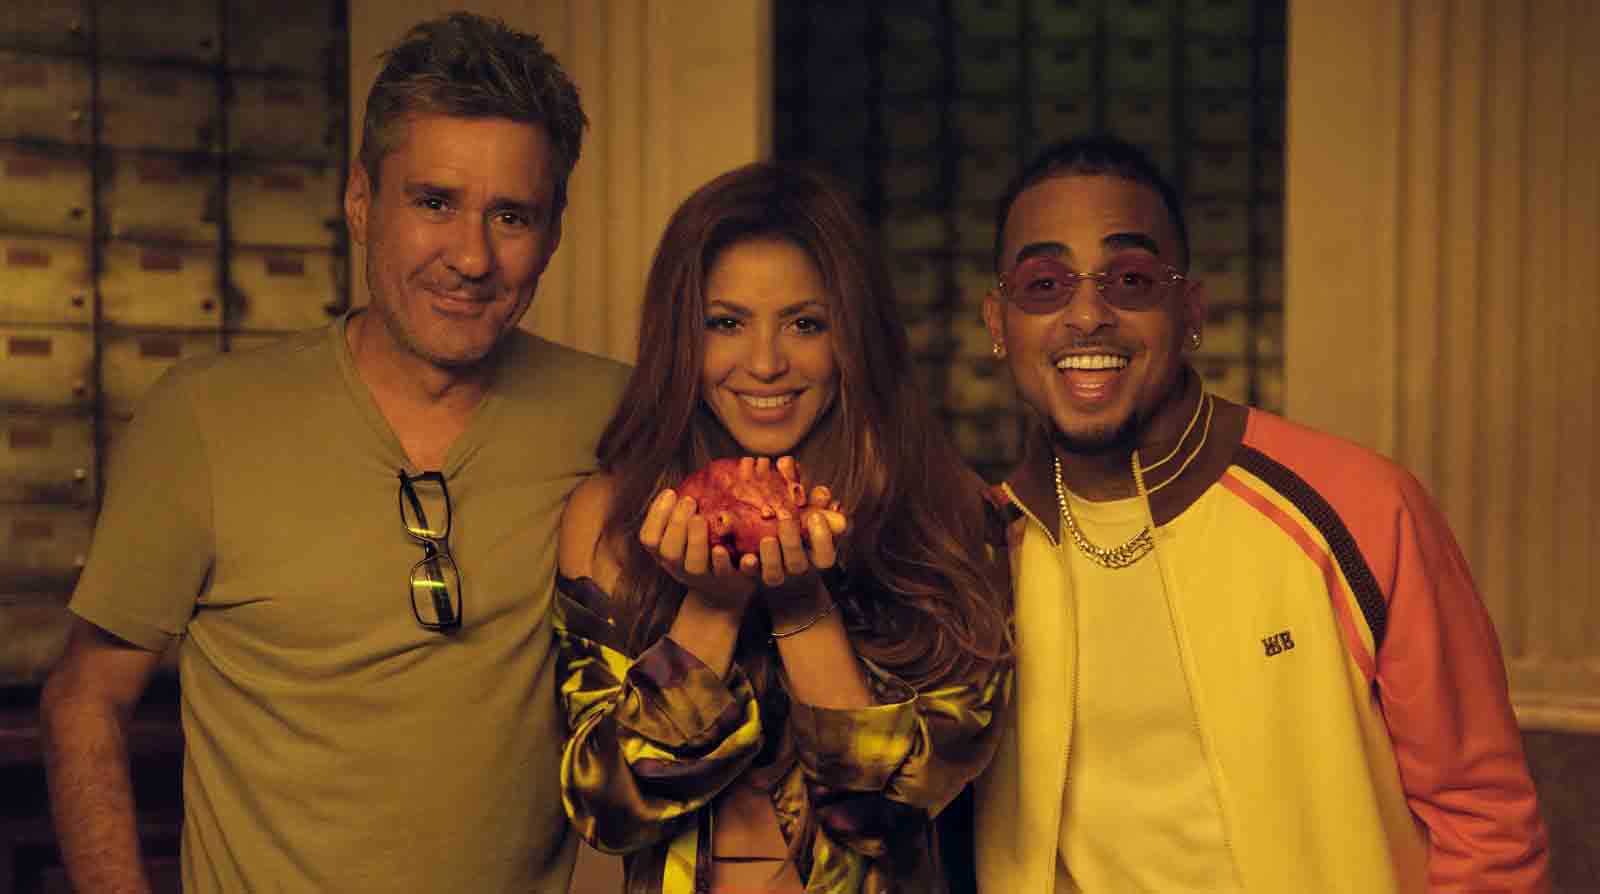 El reciente lanzamiento musical de Shakira causó gran impacto y tendencia en redes sociales. Foto: Facebook